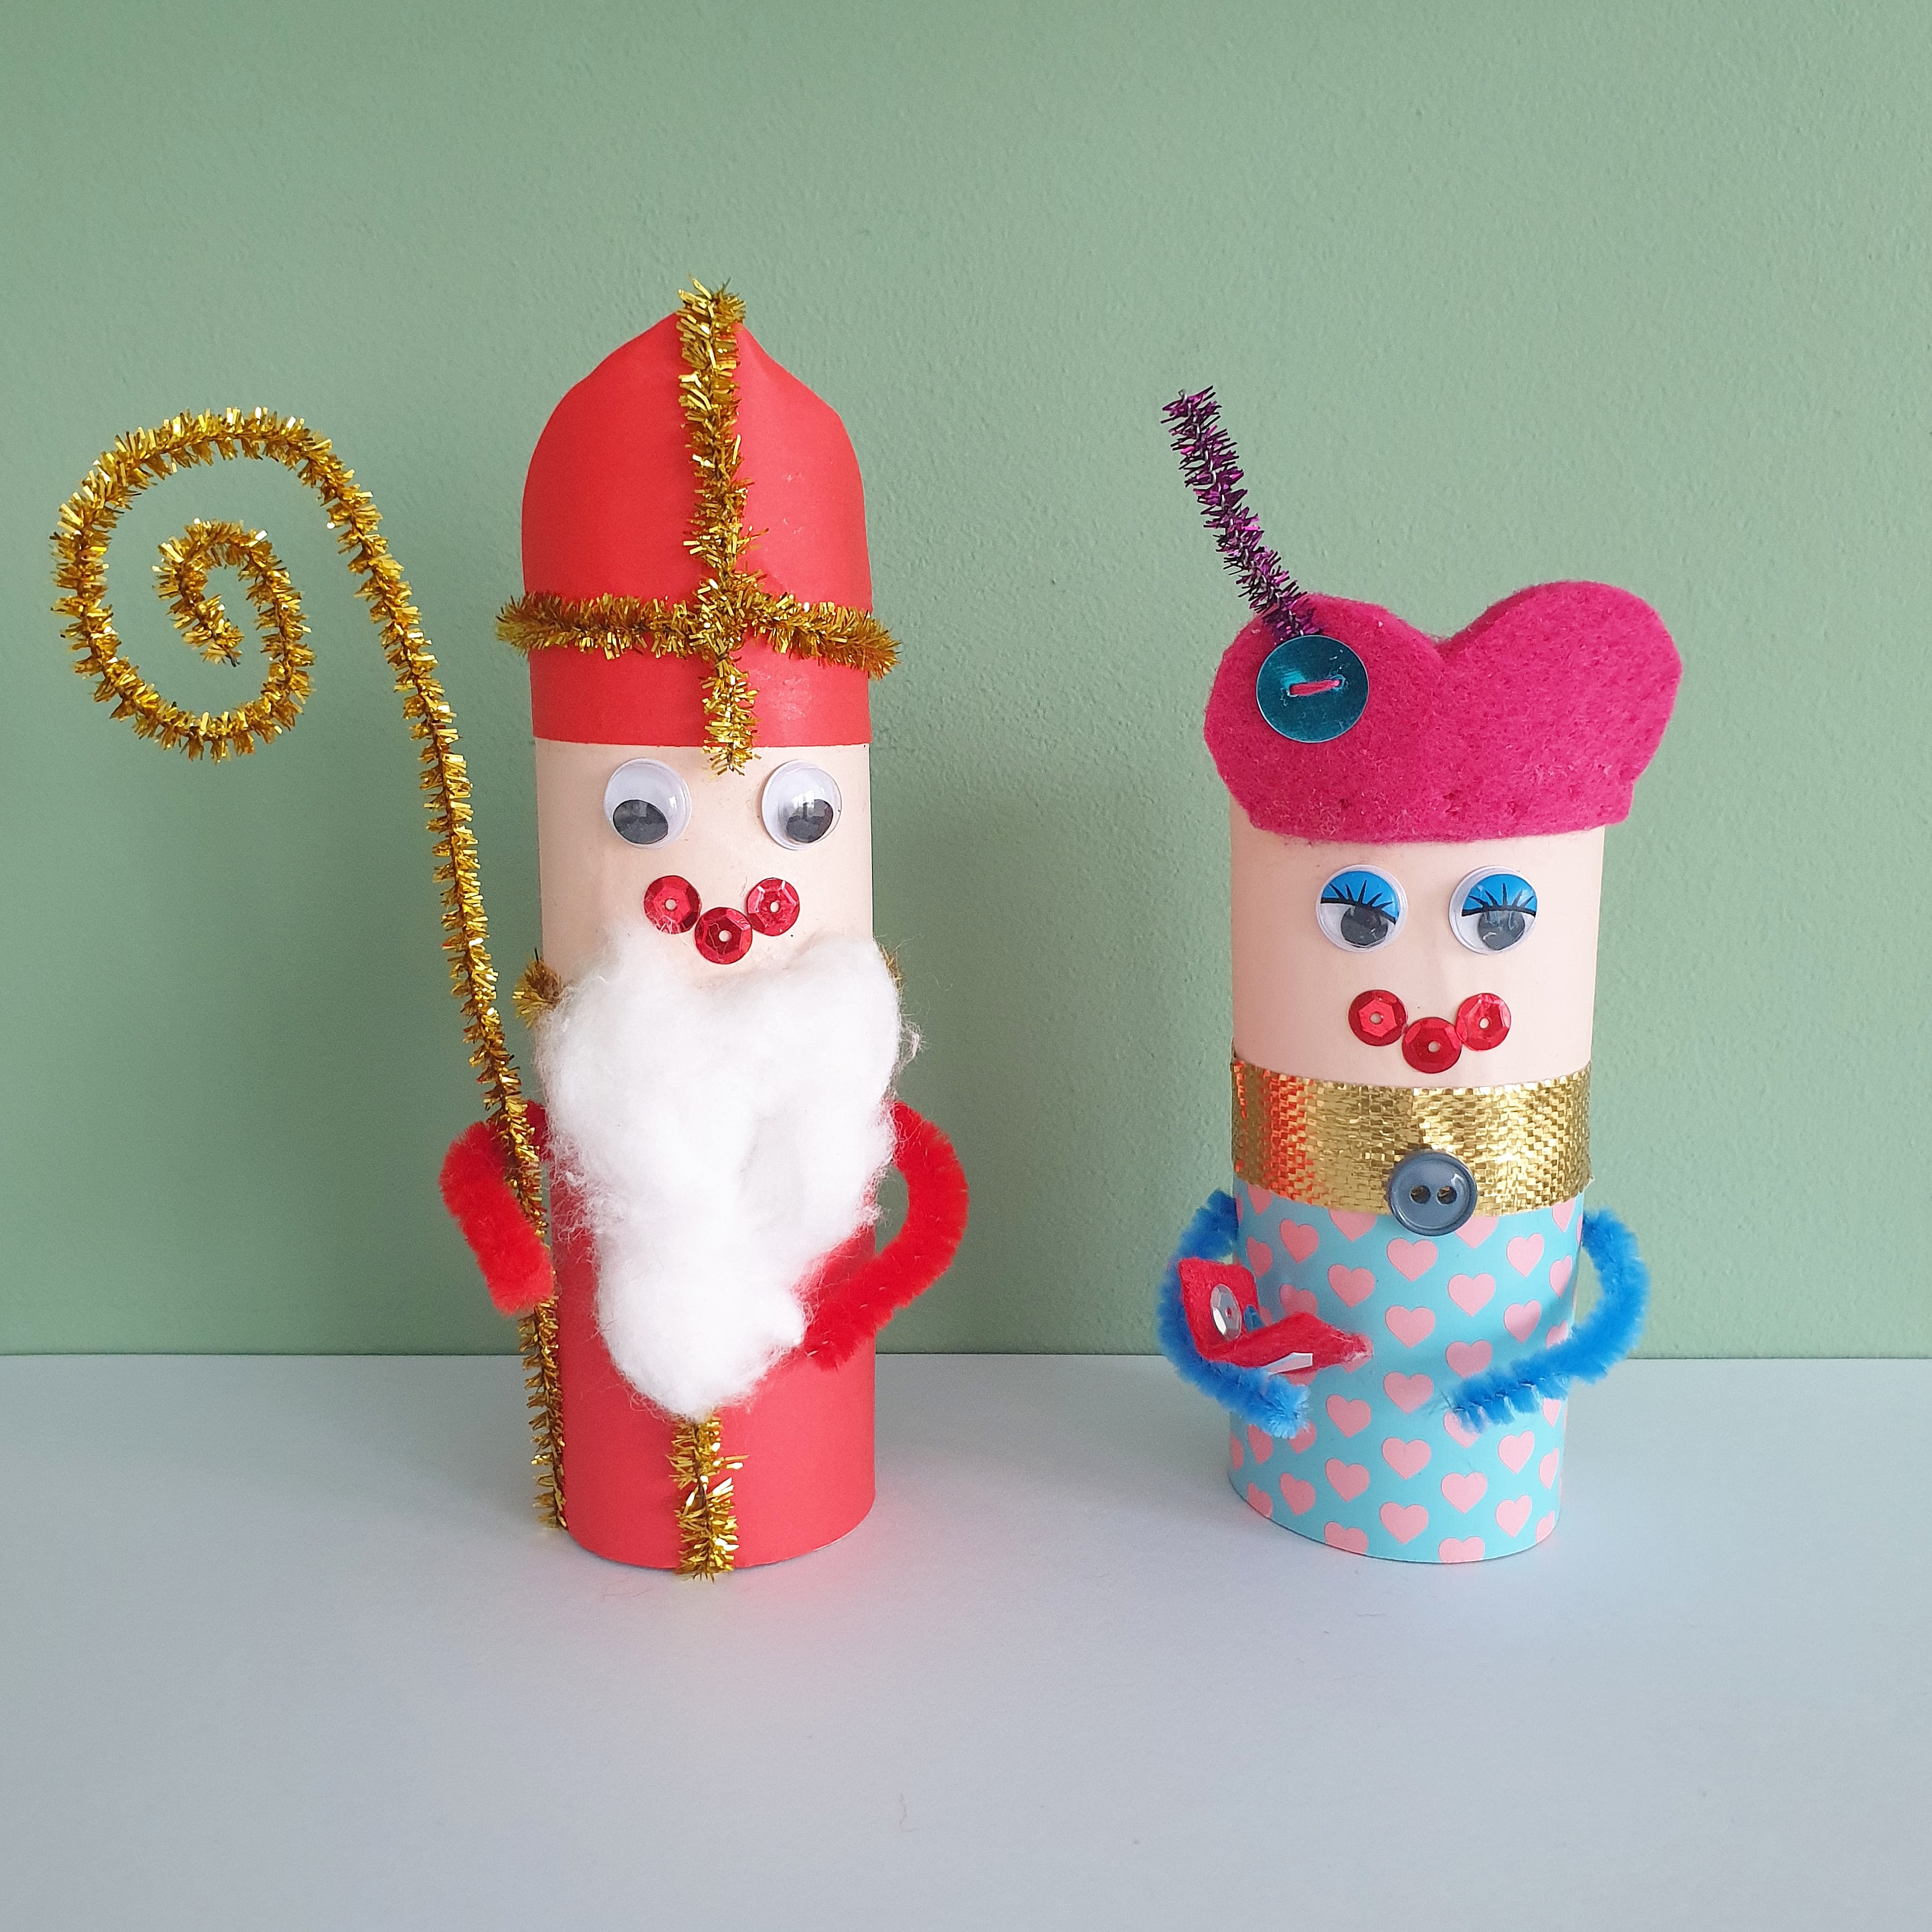 100 ideeën om te knutselen met peuter en kleuter. Zoals een Sinterklaas en Piet van wc rollen knutselen. 